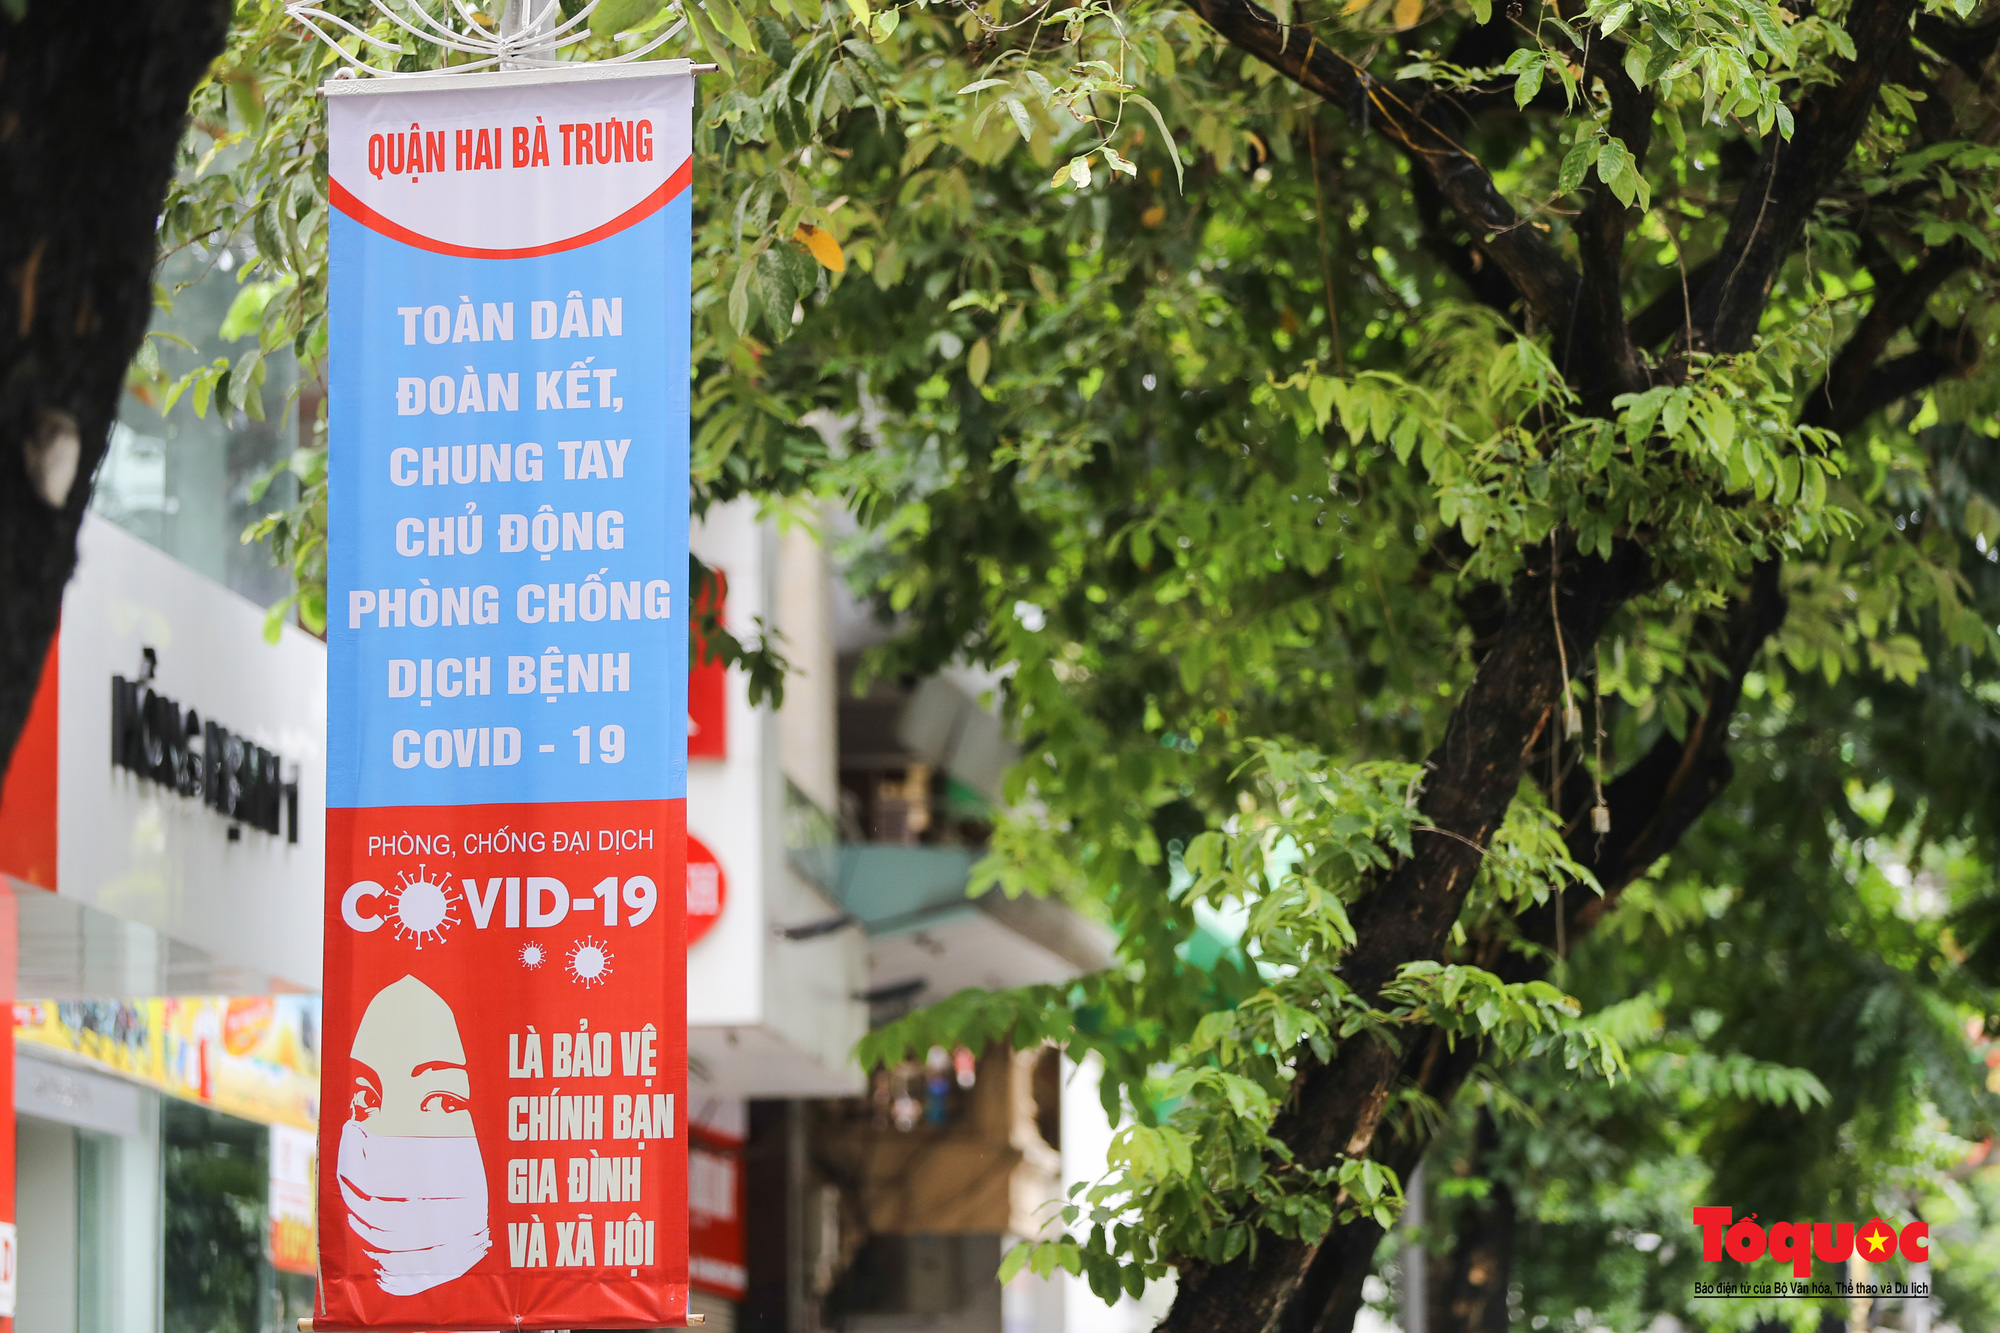 Pano, hình ảnh cổ động phòng chống dịch COVID-19 trên khắp đường phố Hà Nội - Ảnh 4.